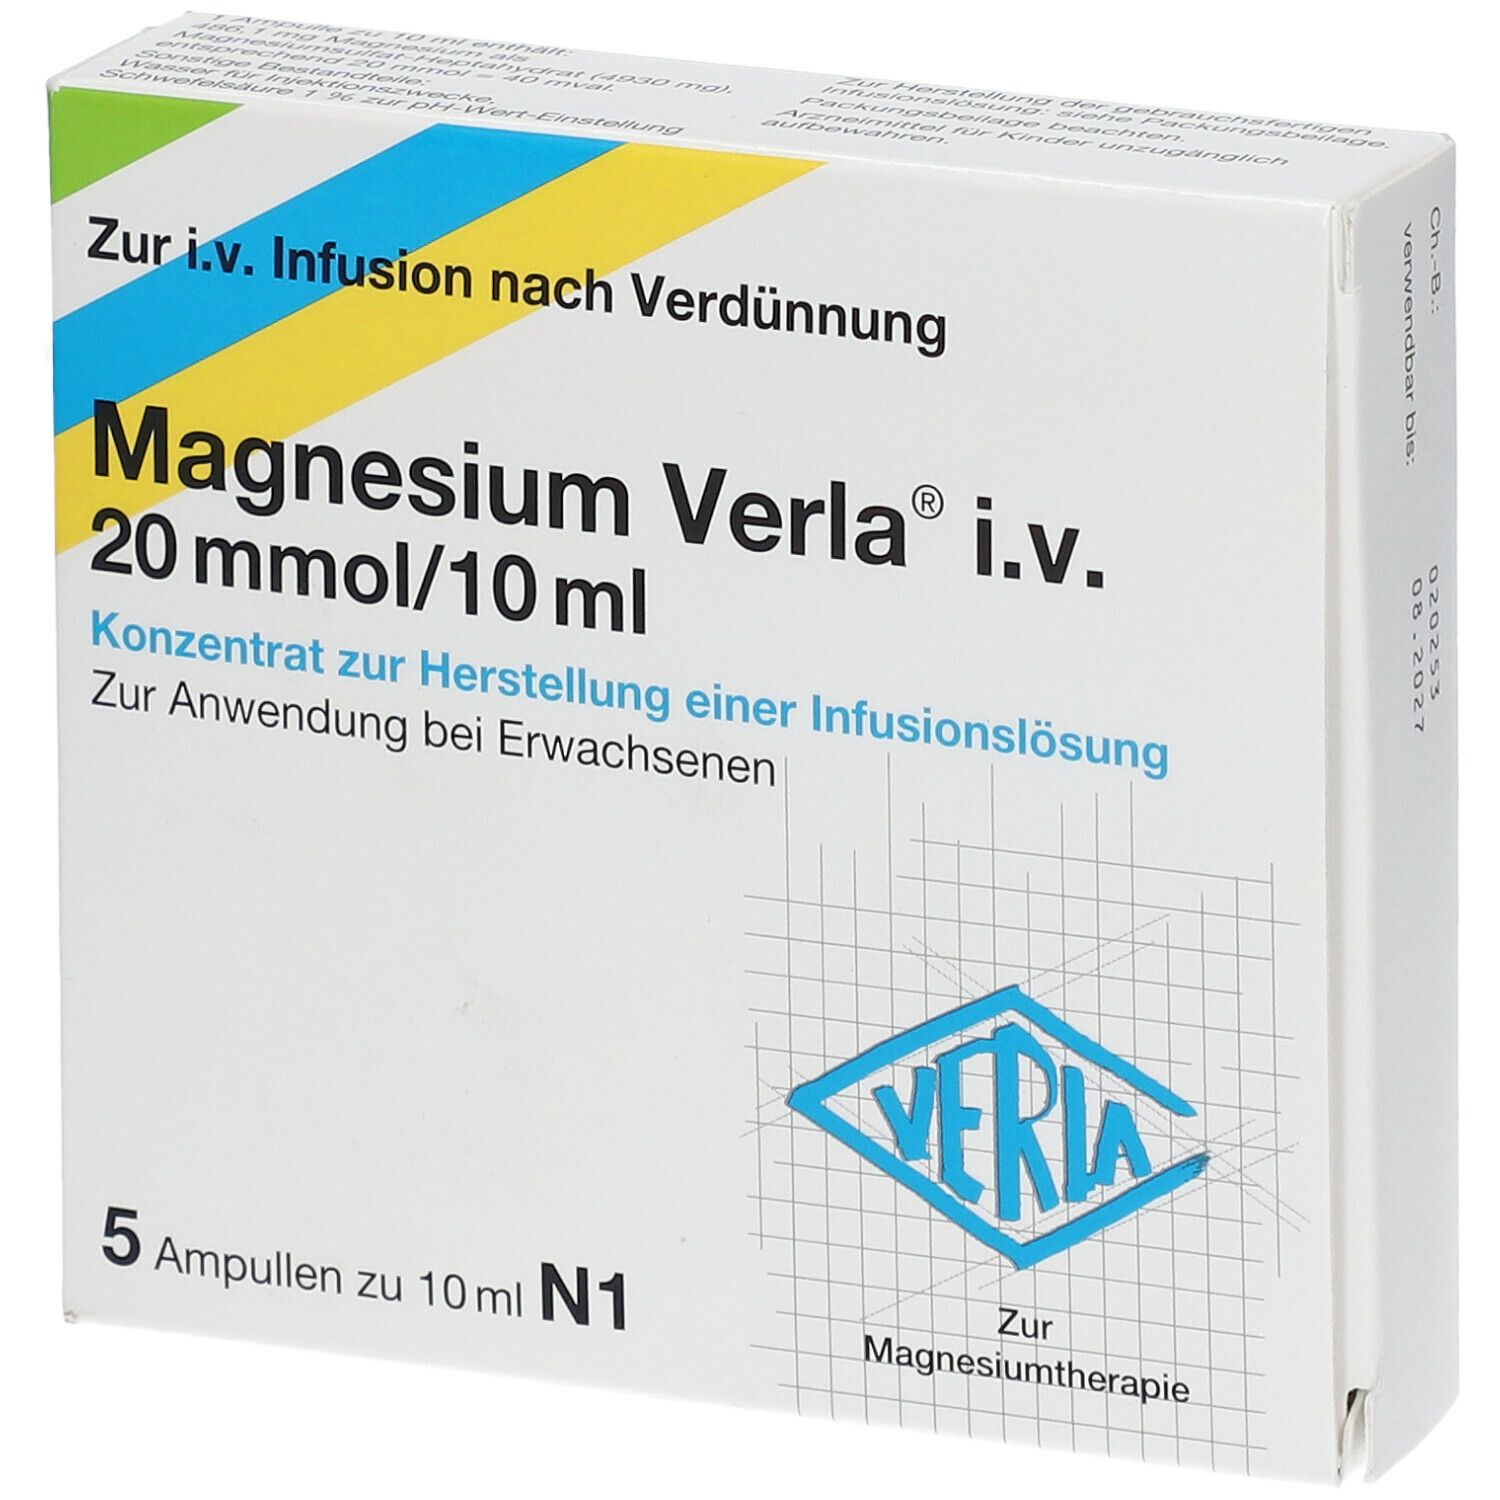 Magnesium Verla® i.v. 20mmol/10 ml